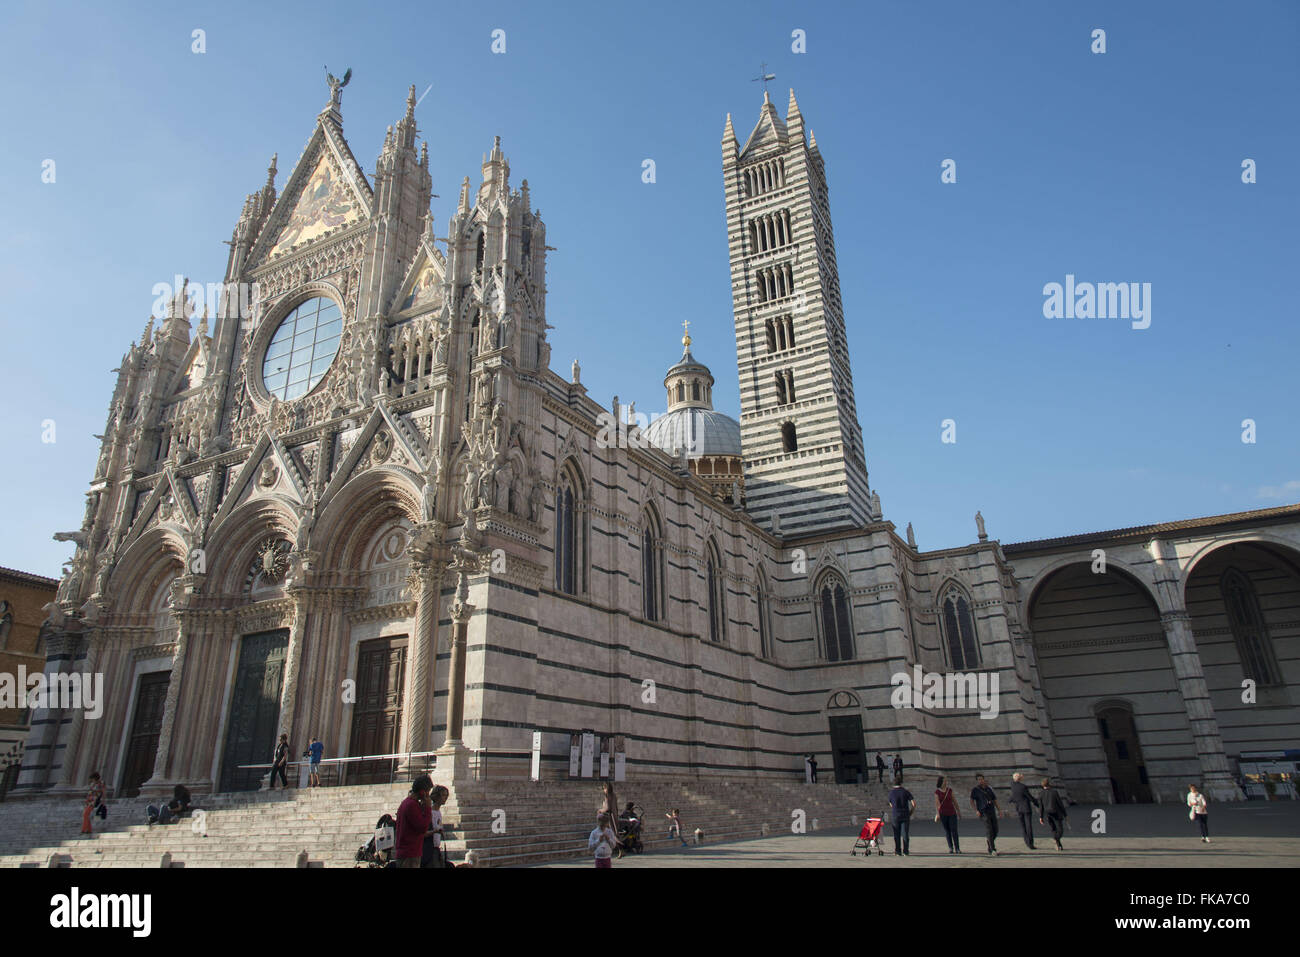 Duomo de Siena em estilo românico-gótico - construção do século XIII Stock Photo